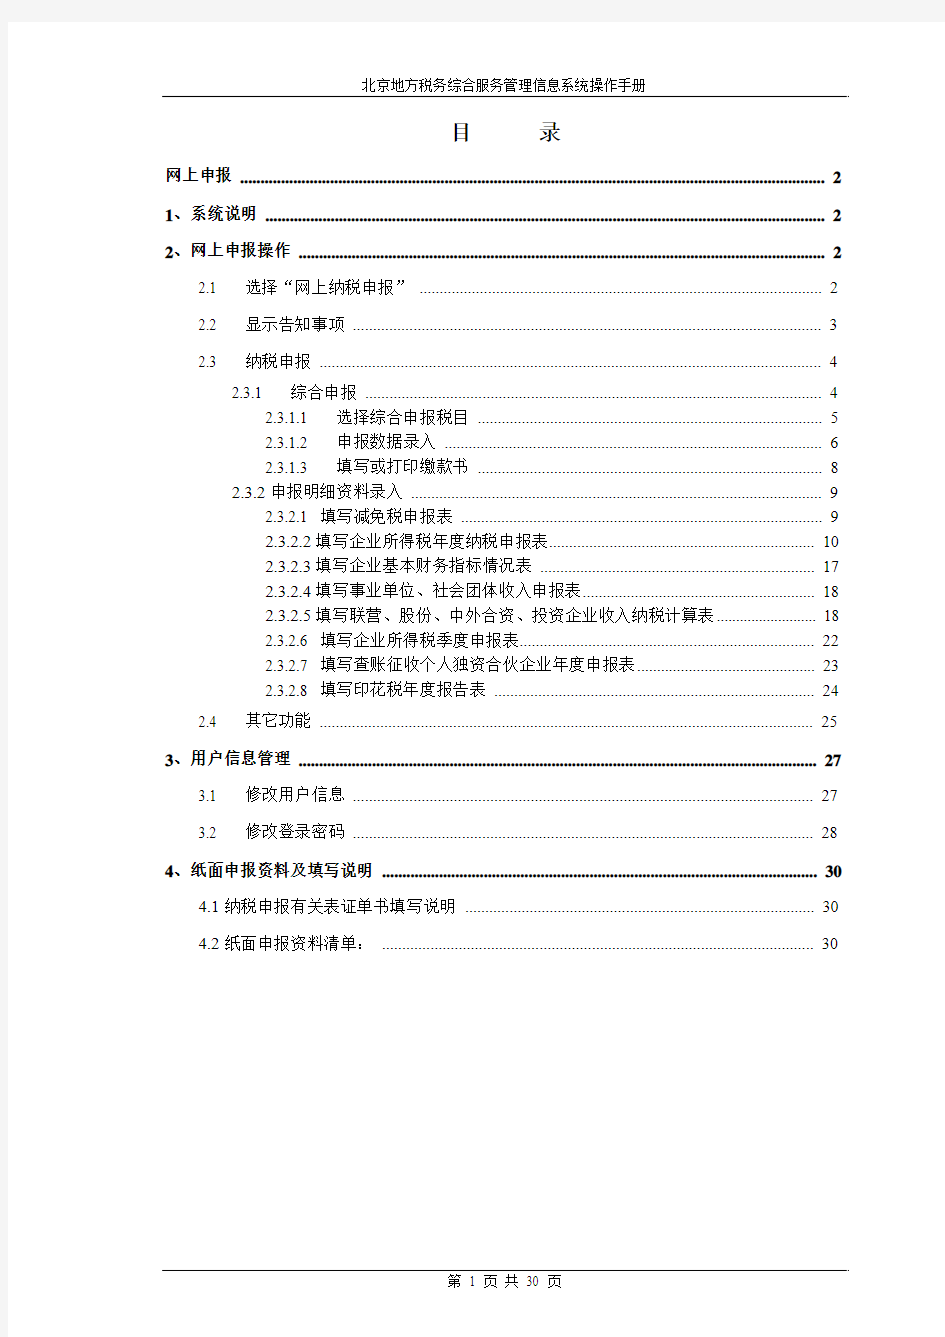 北京地税网上申报 使用手册